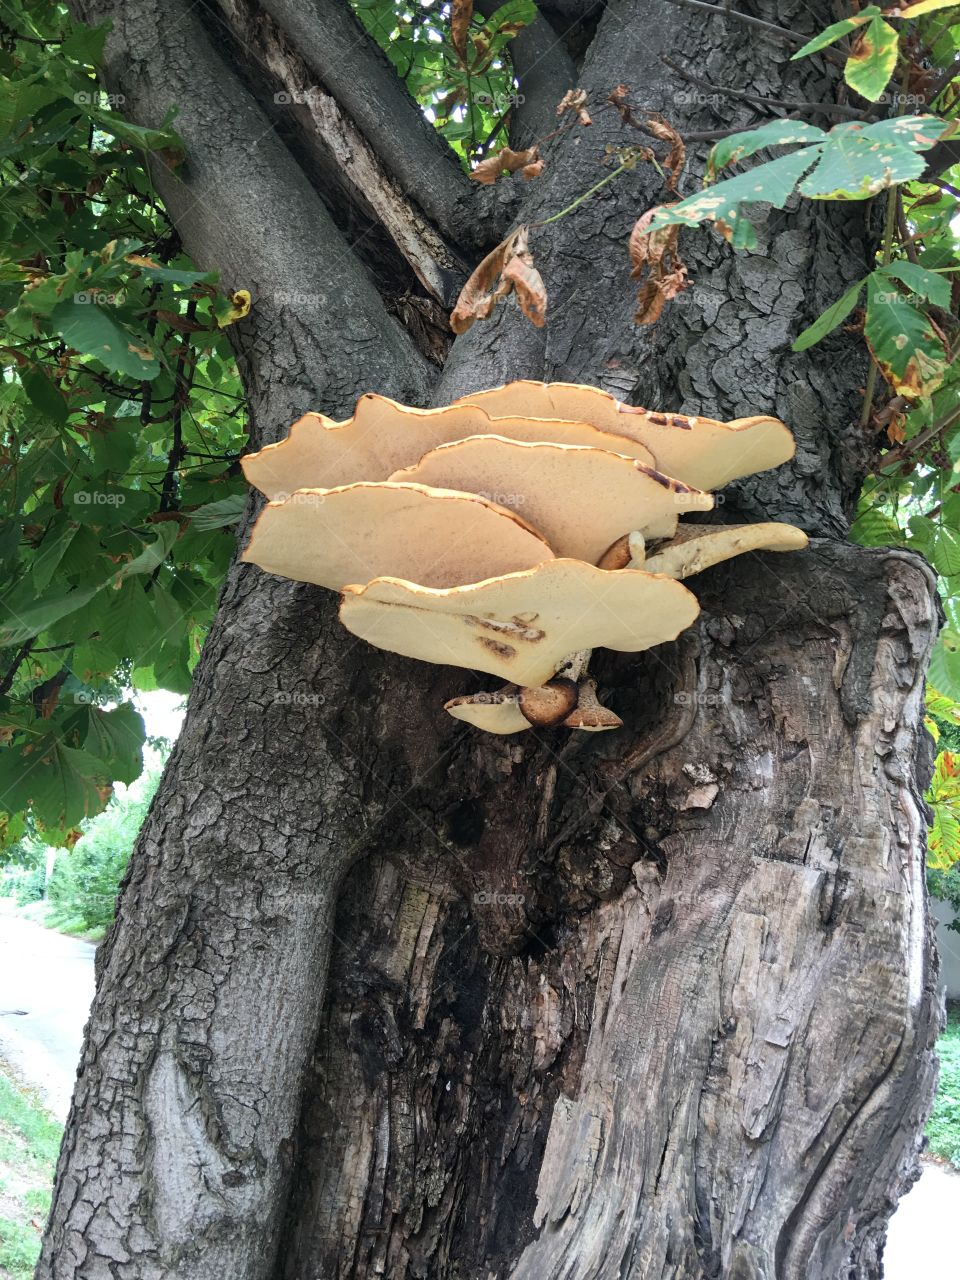 Mushrooms on a tree, Oyster mushroom